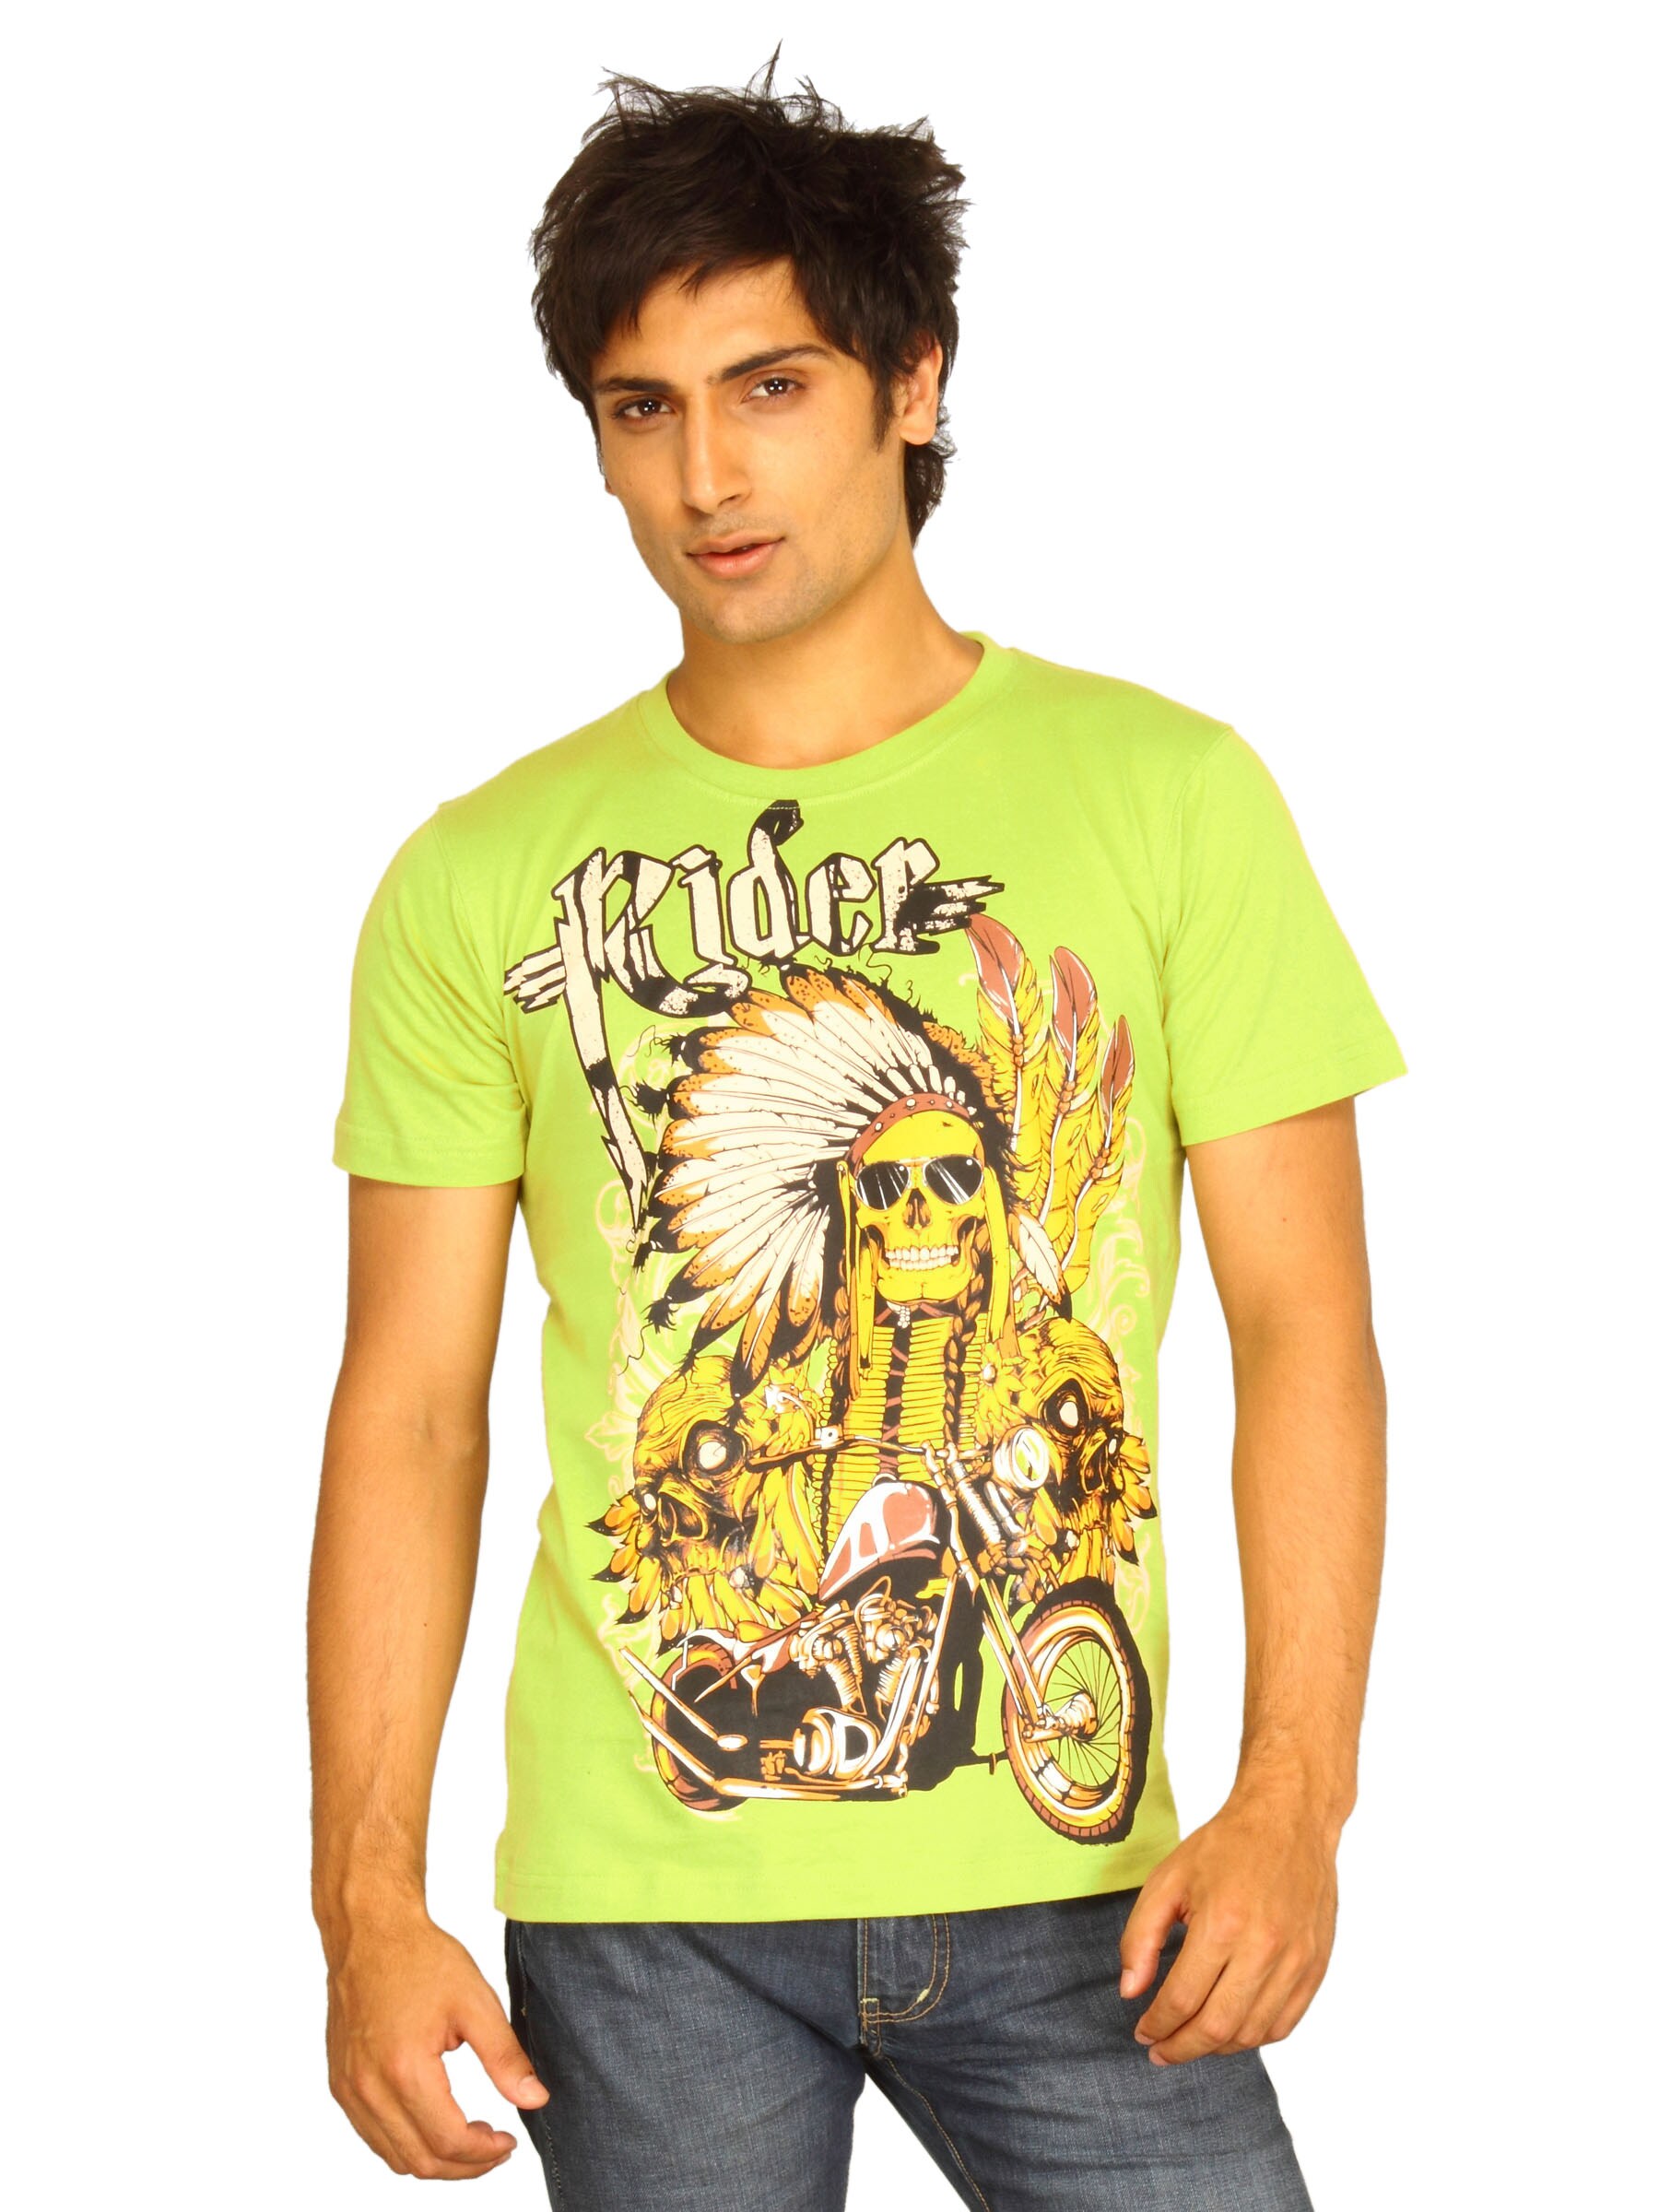 Guerrilla Men's Rider Green T-shirt